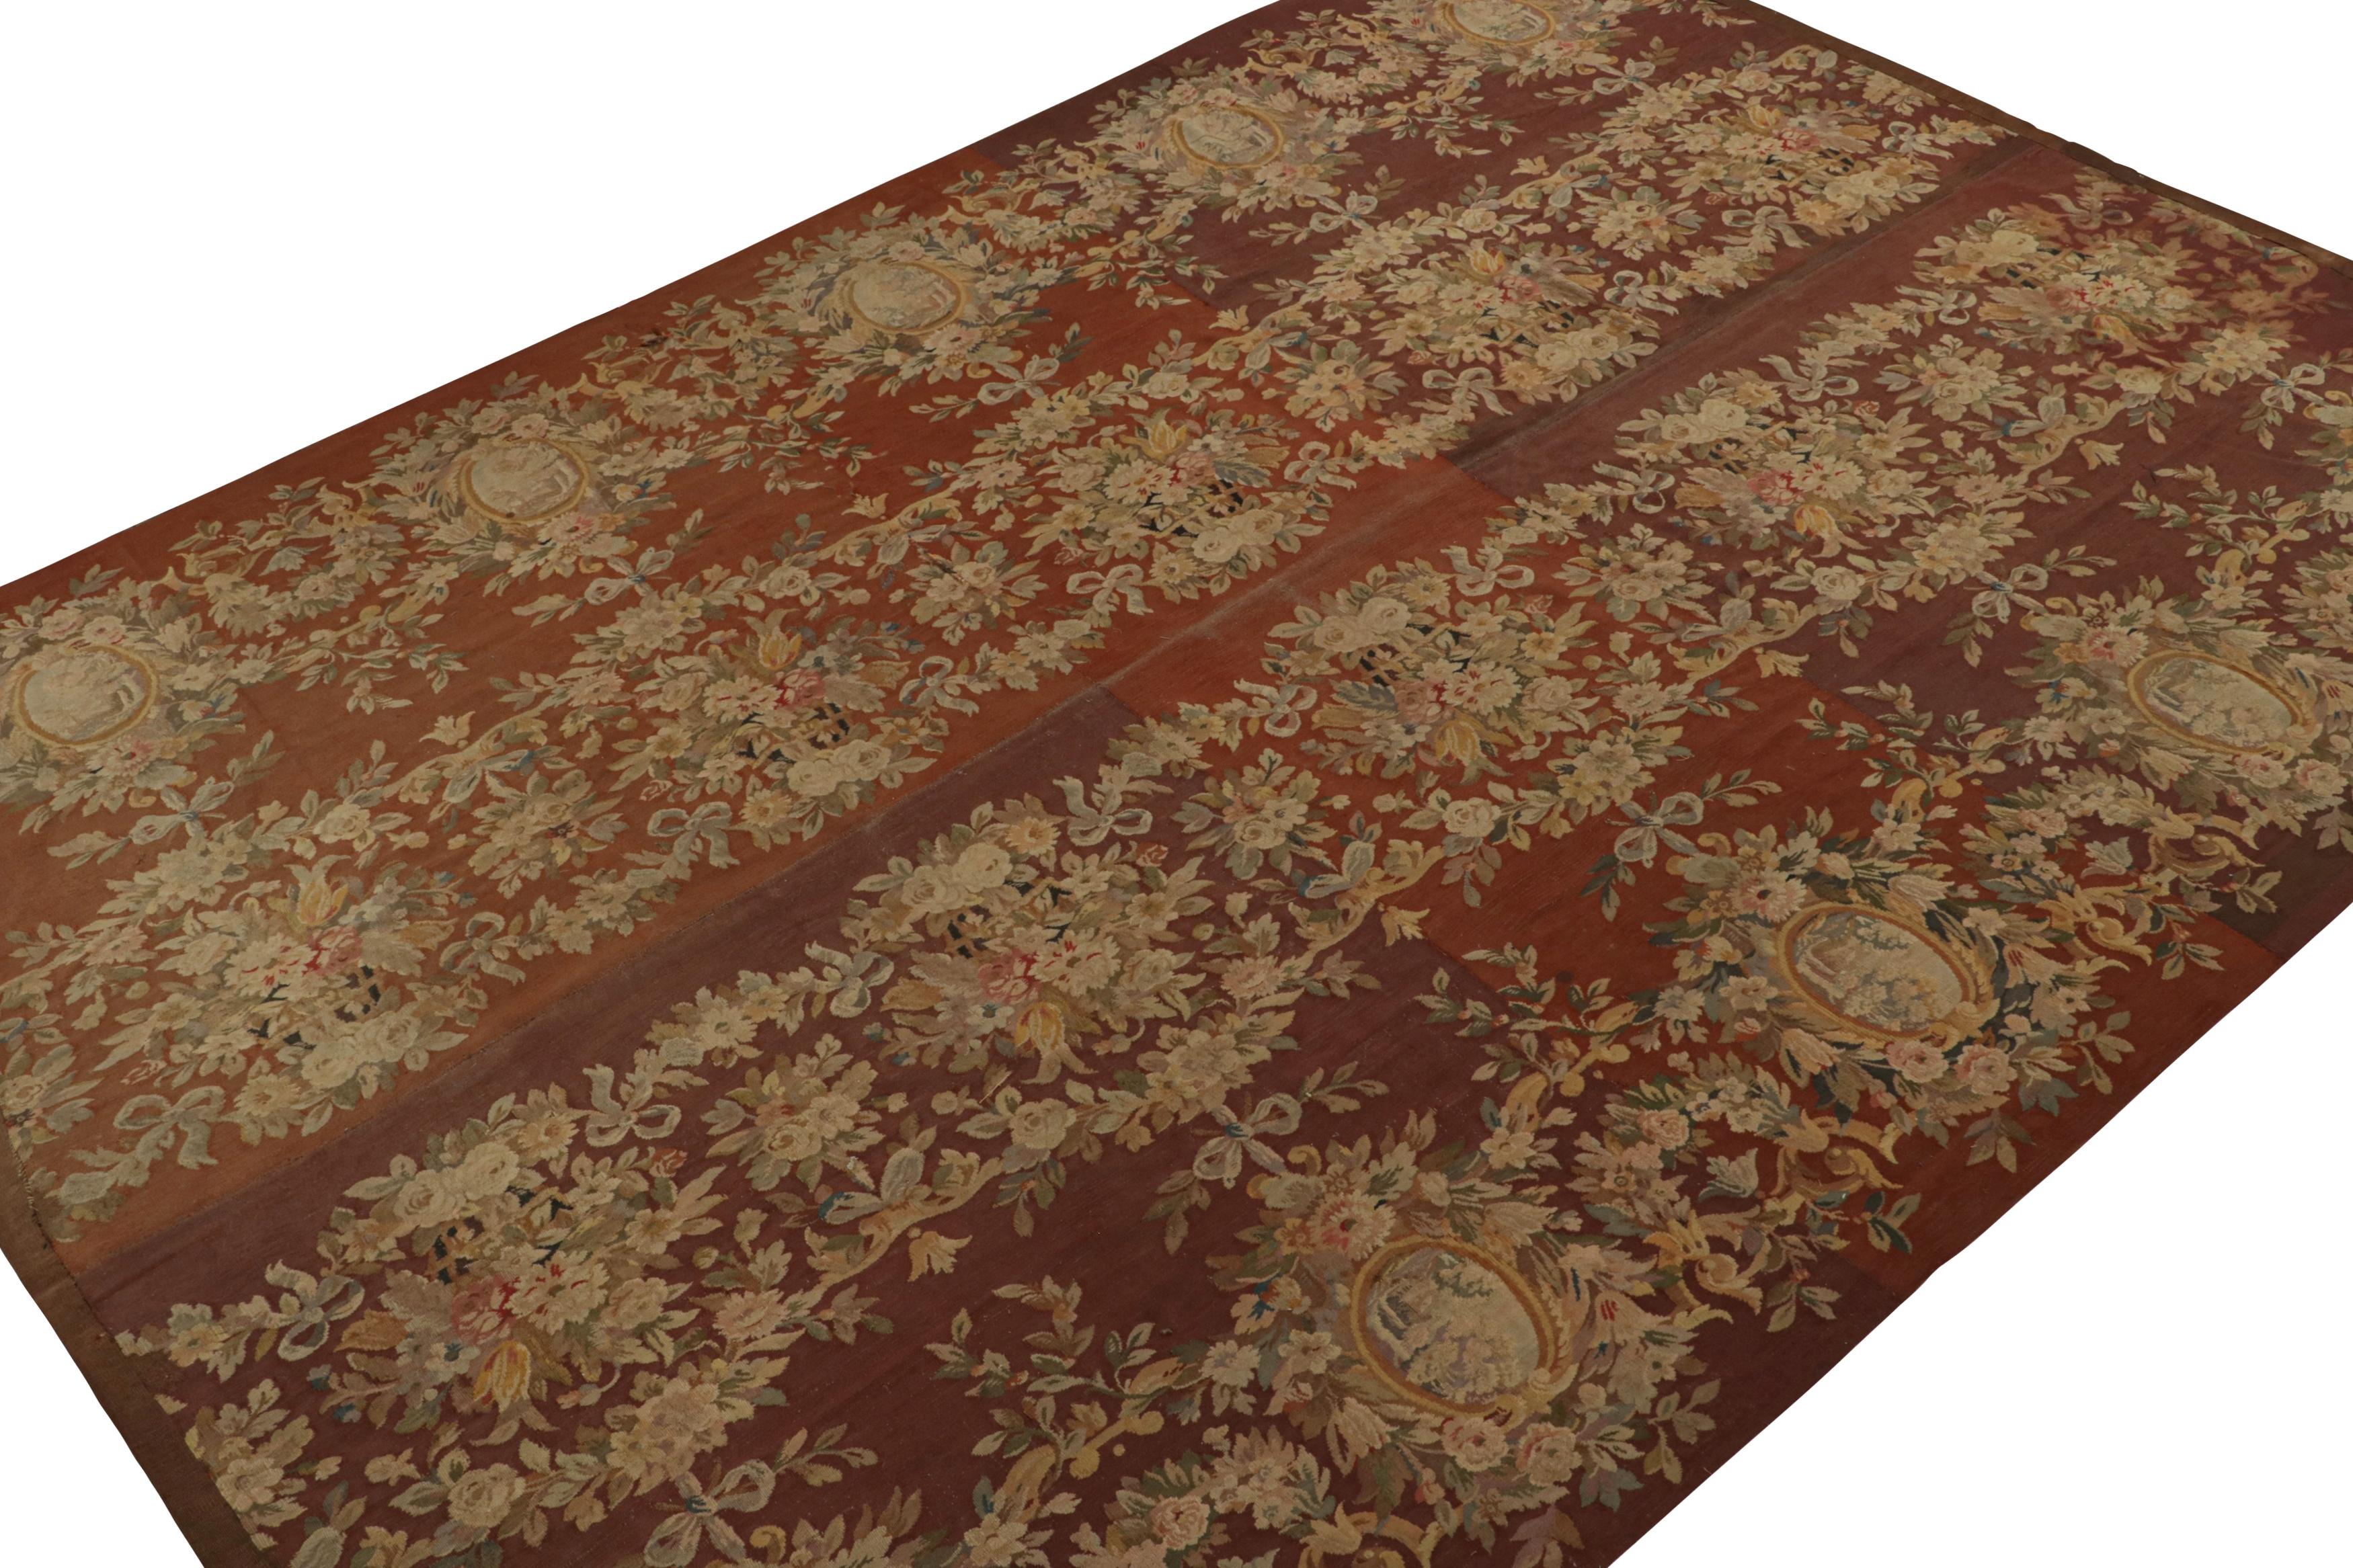 Dieser 10x14 große, handgewebte Aubusson-Flachgewebe-Teppich aus Frankreich (ca. 1950-1960) ist eine seltene Kuration aus der europäischen Teppichkollektion von Rug & Kilim. Das Design ist in satten Brauntönen gehalten, mit fein detaillierten